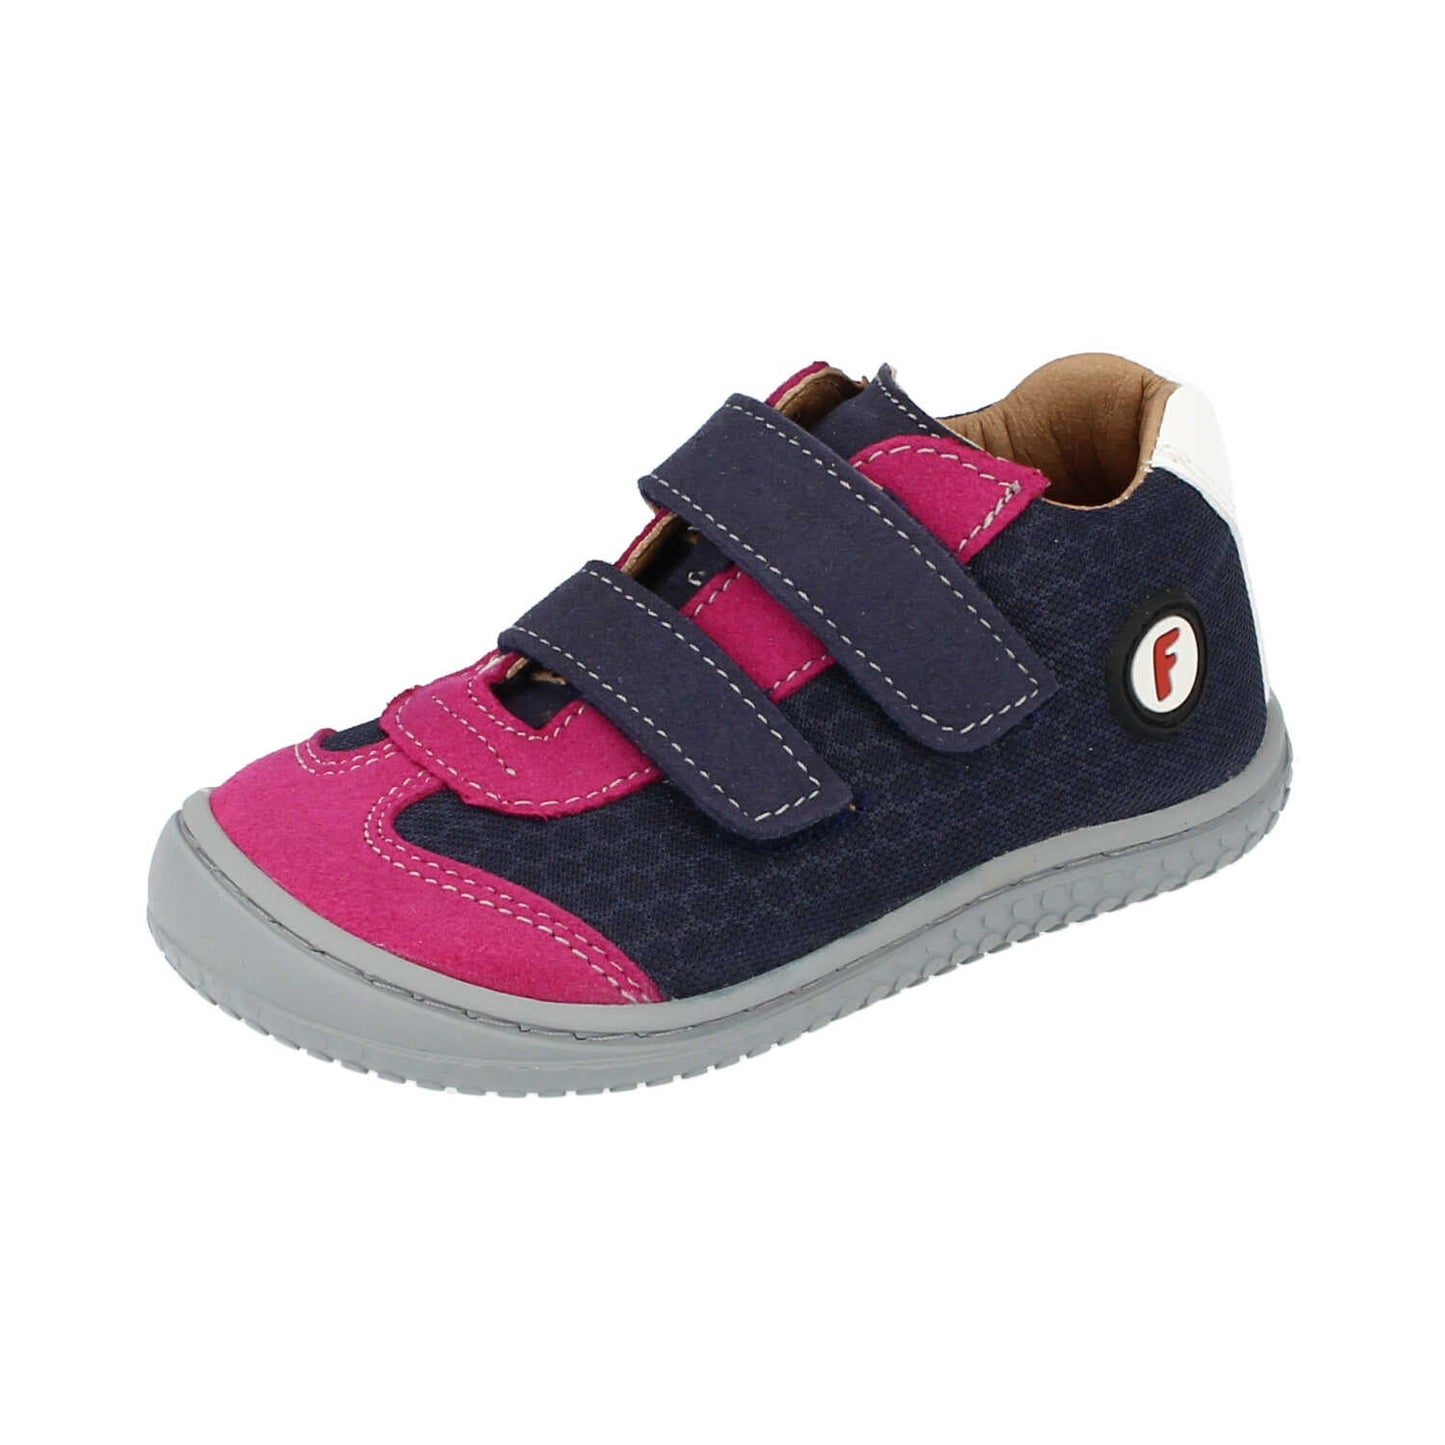 Filii Leguan "Medium" barfods sneakers til børn i farven ocean pink, vinklet